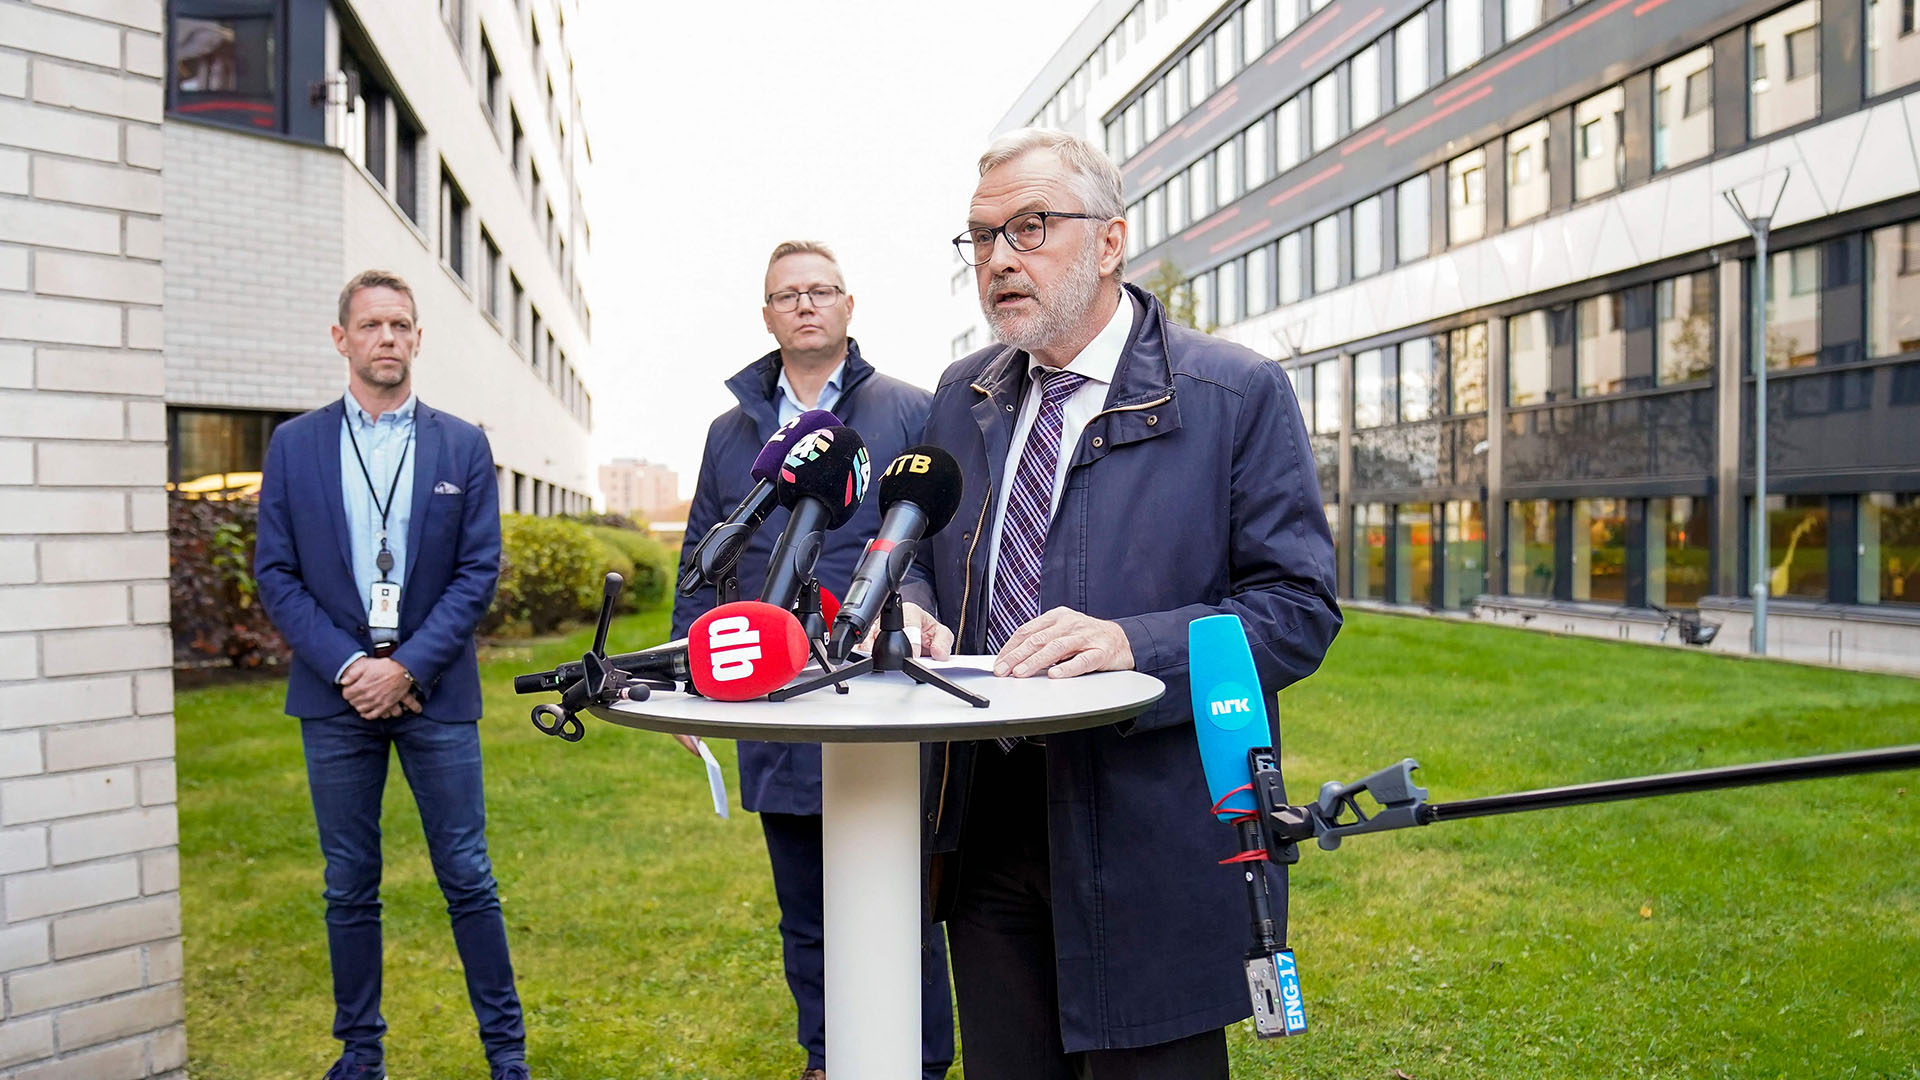 Hans Sverre Sjoevold bei einem Presse-Statement | AFP